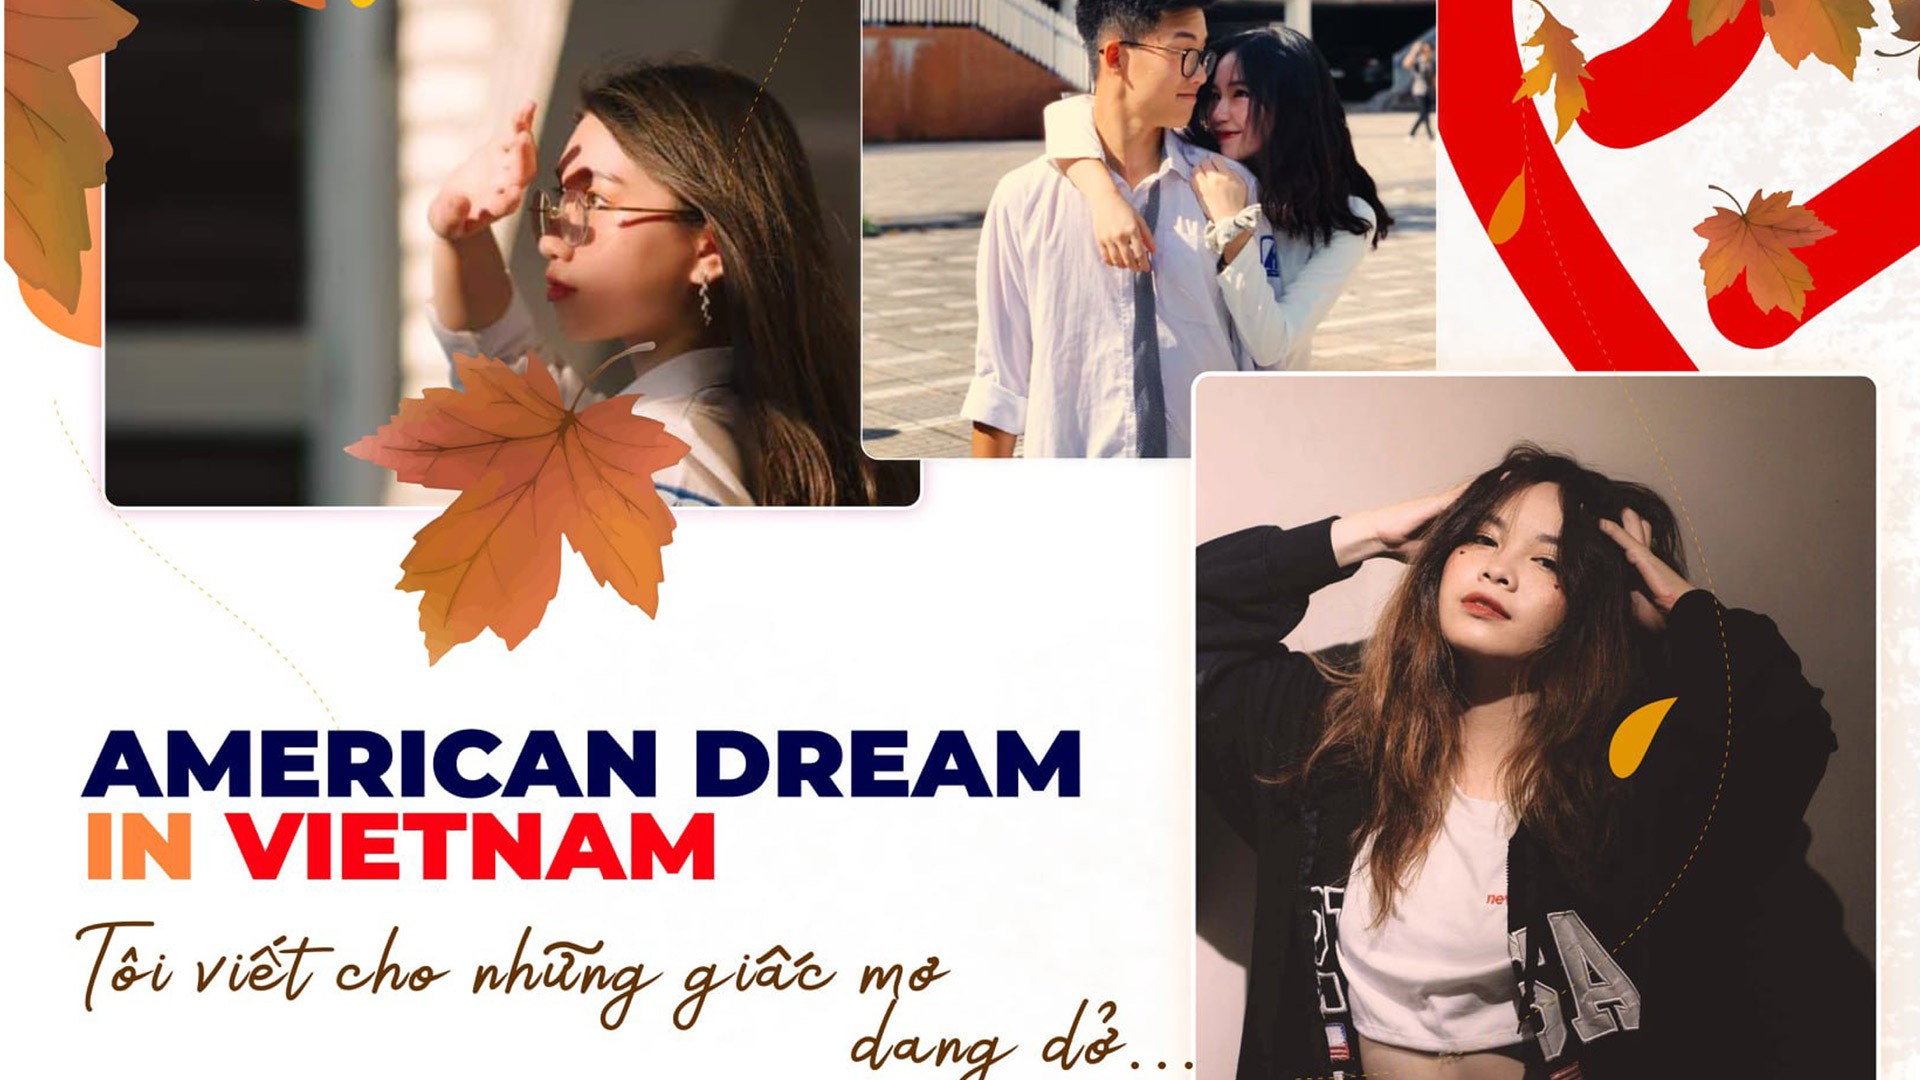 Cuộc thi ảnh online “AMERICAN DREAM IN VIETNAM" dành cho học sinh, sinh viên tại Việt Nam